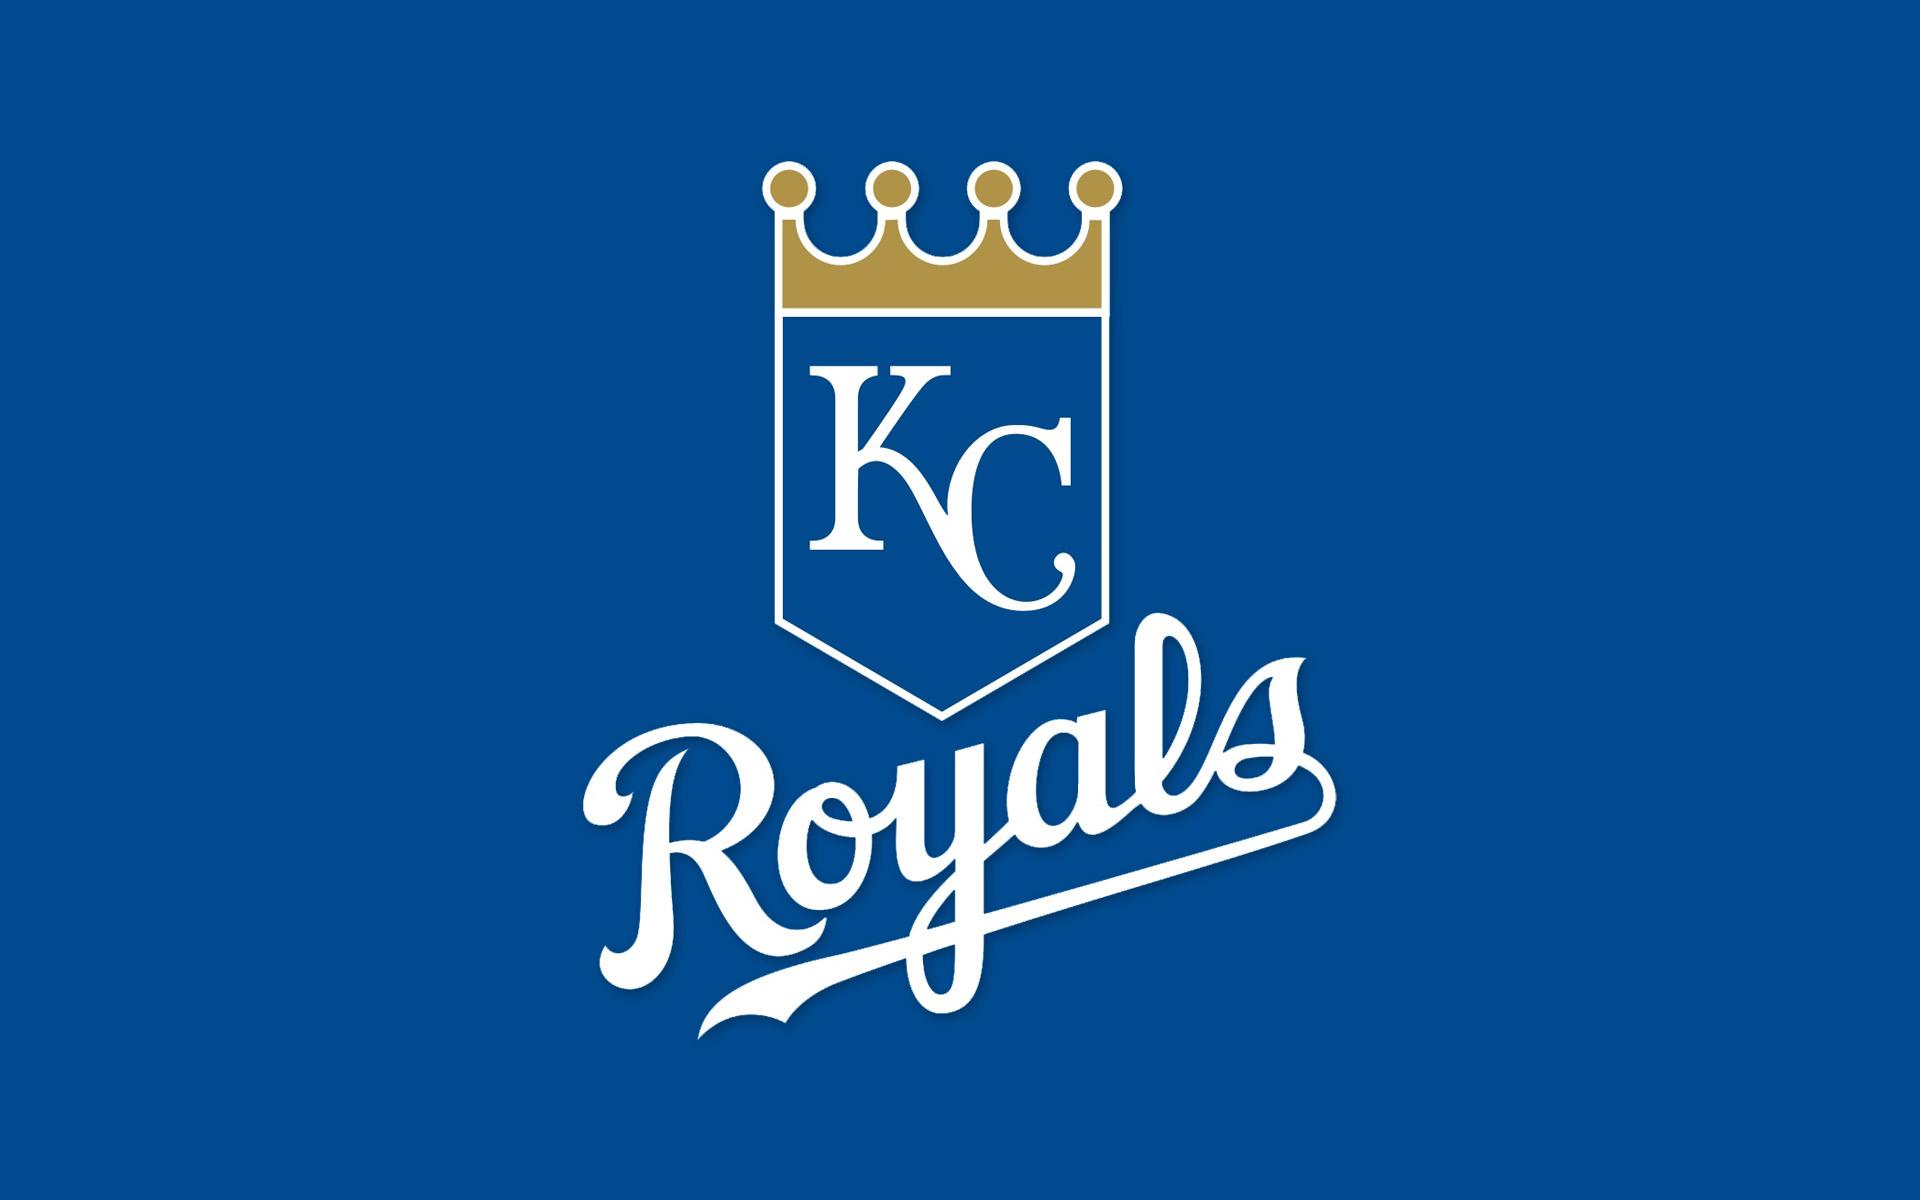 Kansas City Royals 2019 Wallpapers - Wallpaper Cave